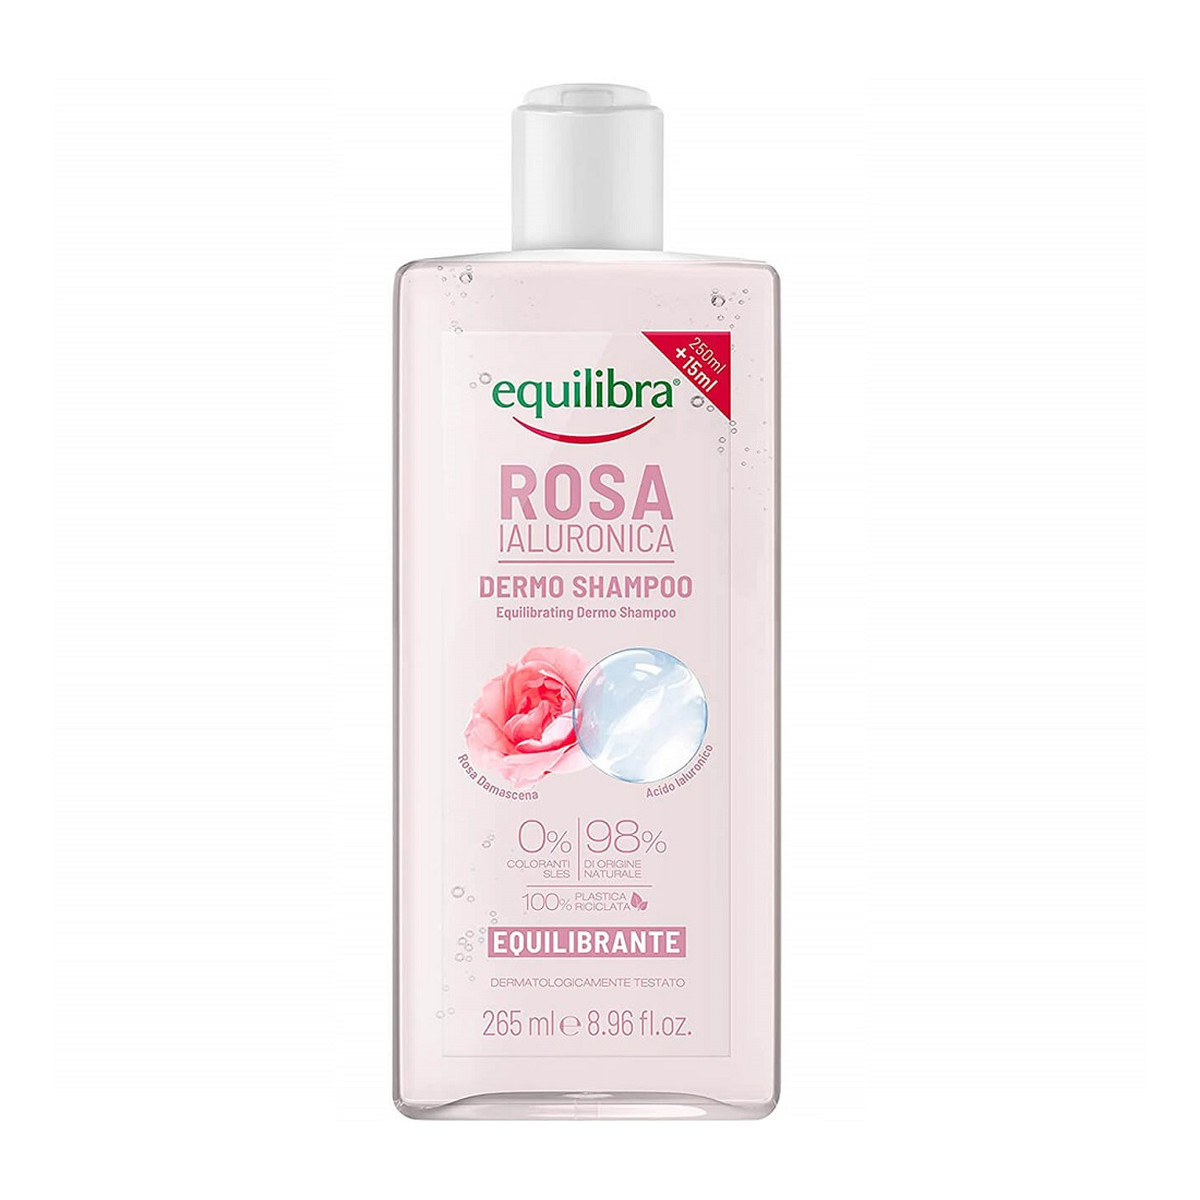 Equilibra Rosa balancing dermo shampoo równoważący szampon z ekstraktem z róży i kwasem hialuronowym 265ml